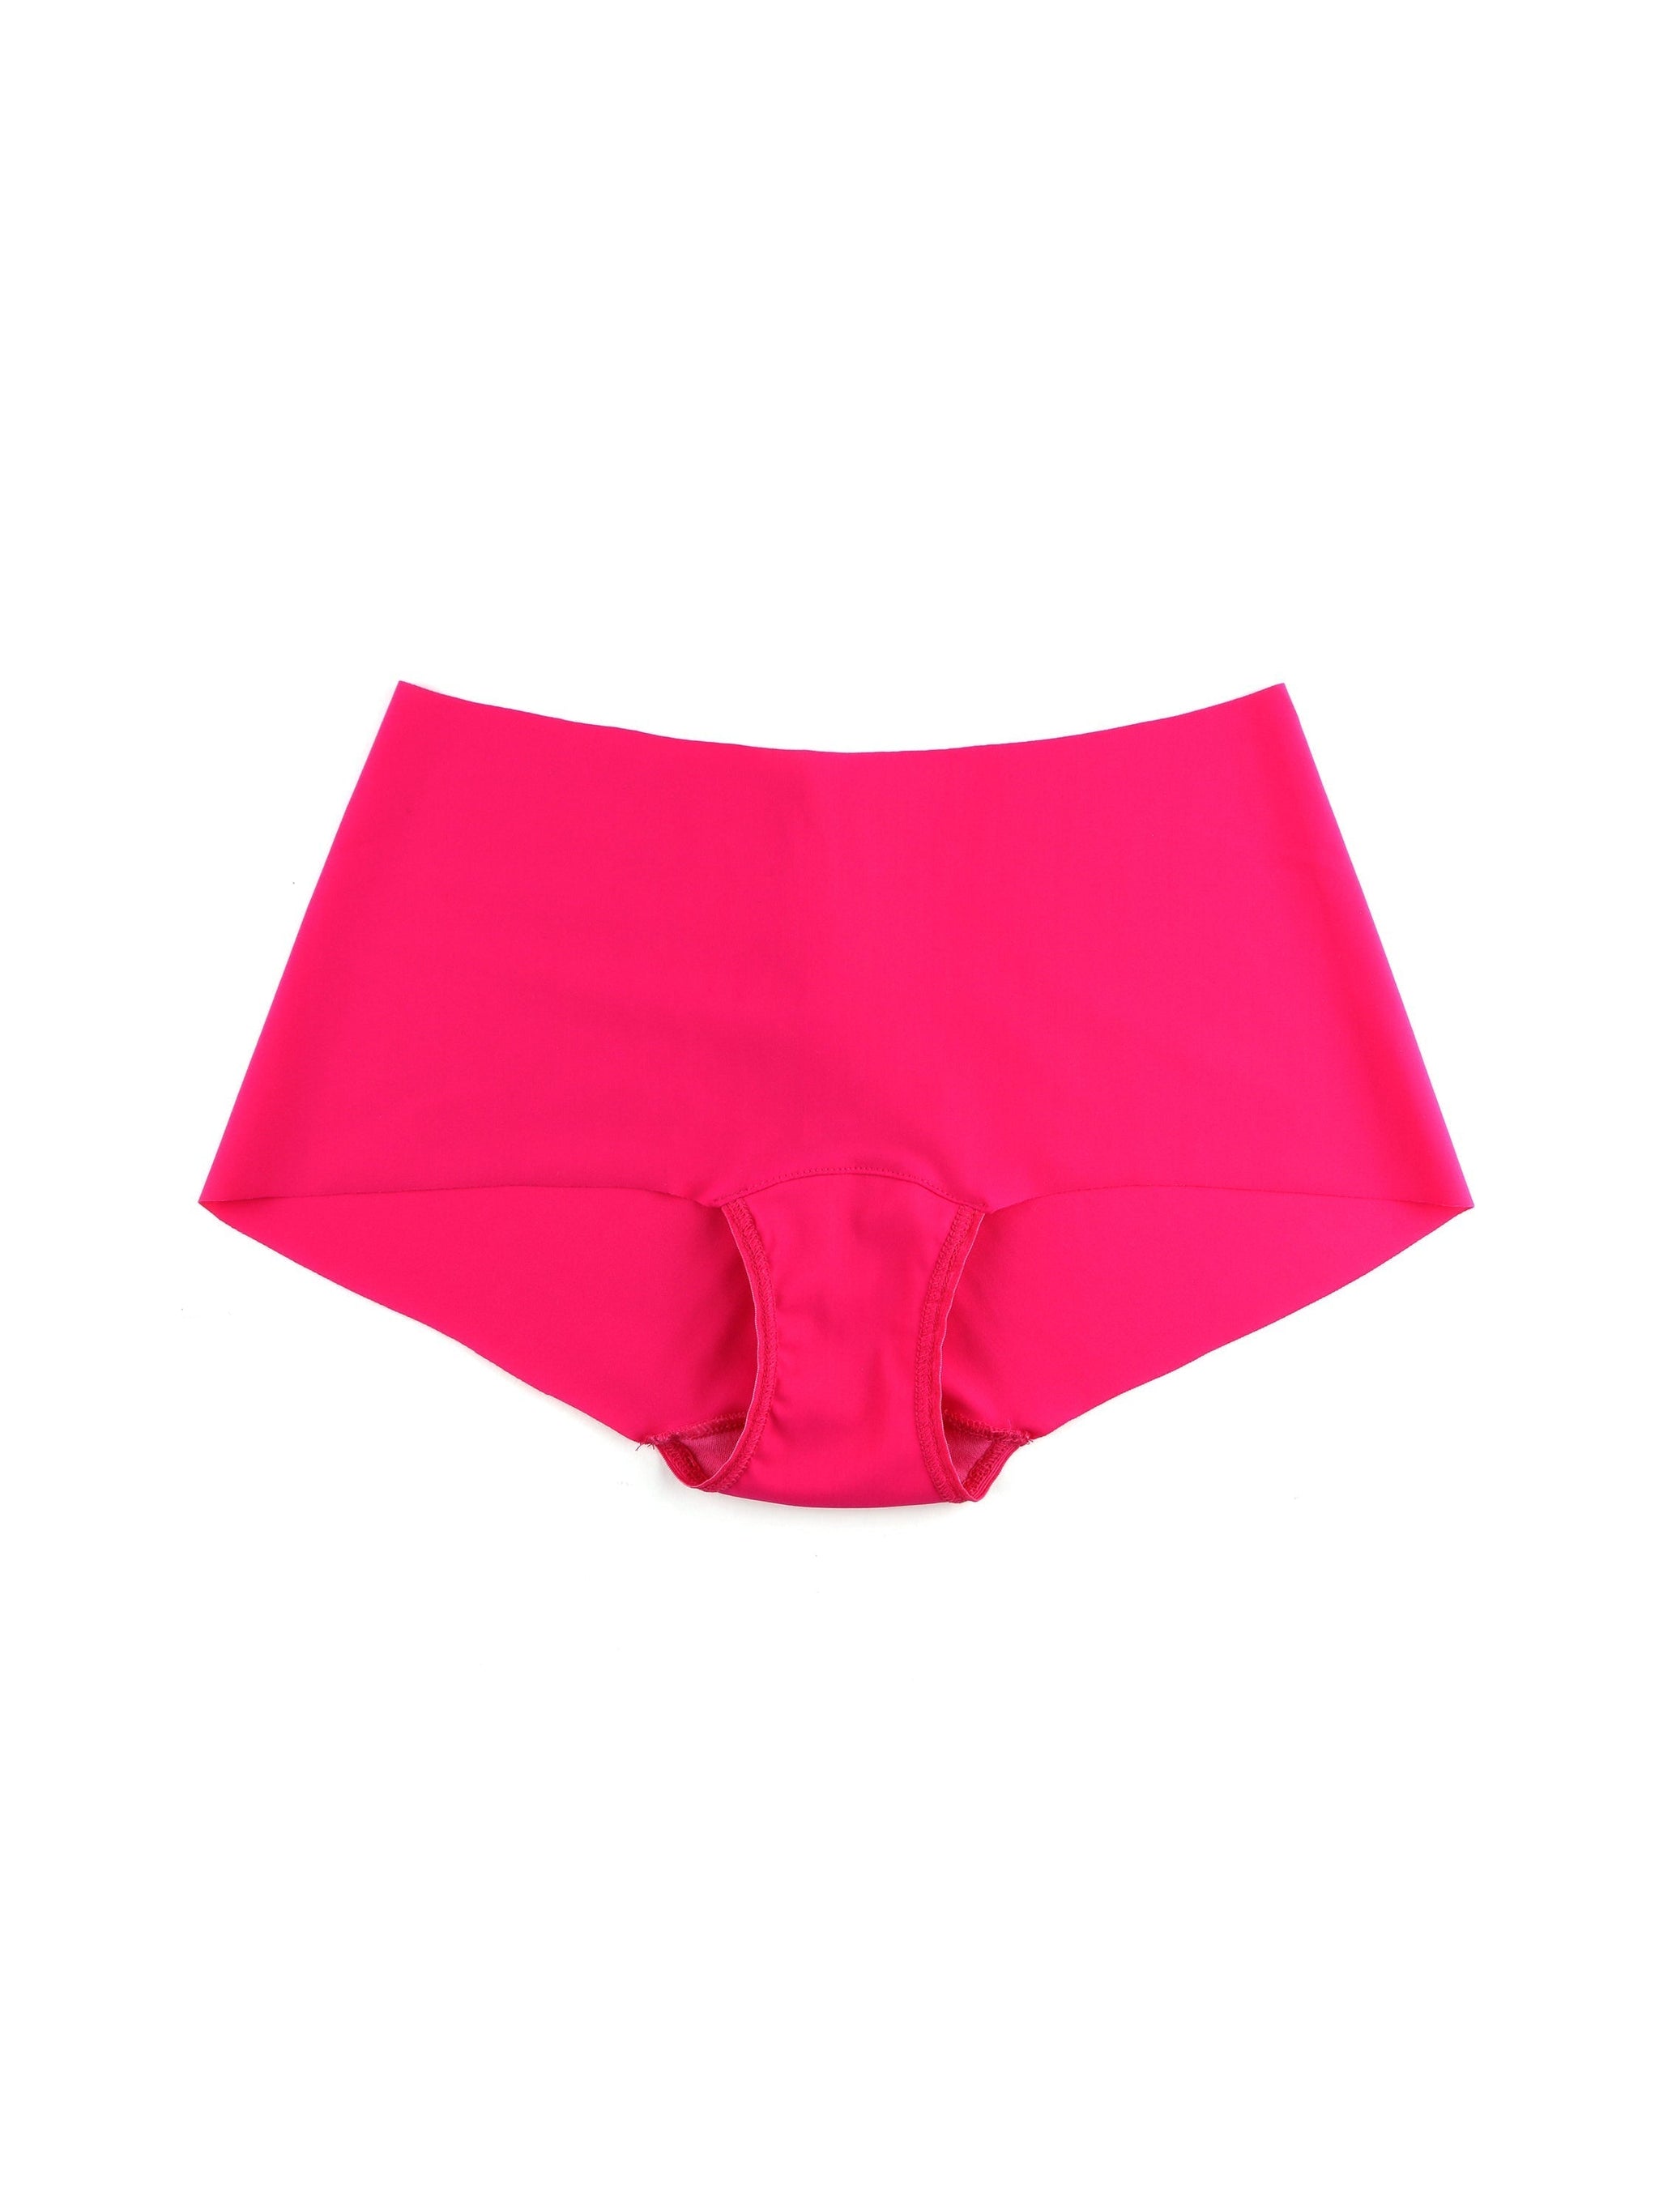 Pink Boyshorts & Hipster Underwear